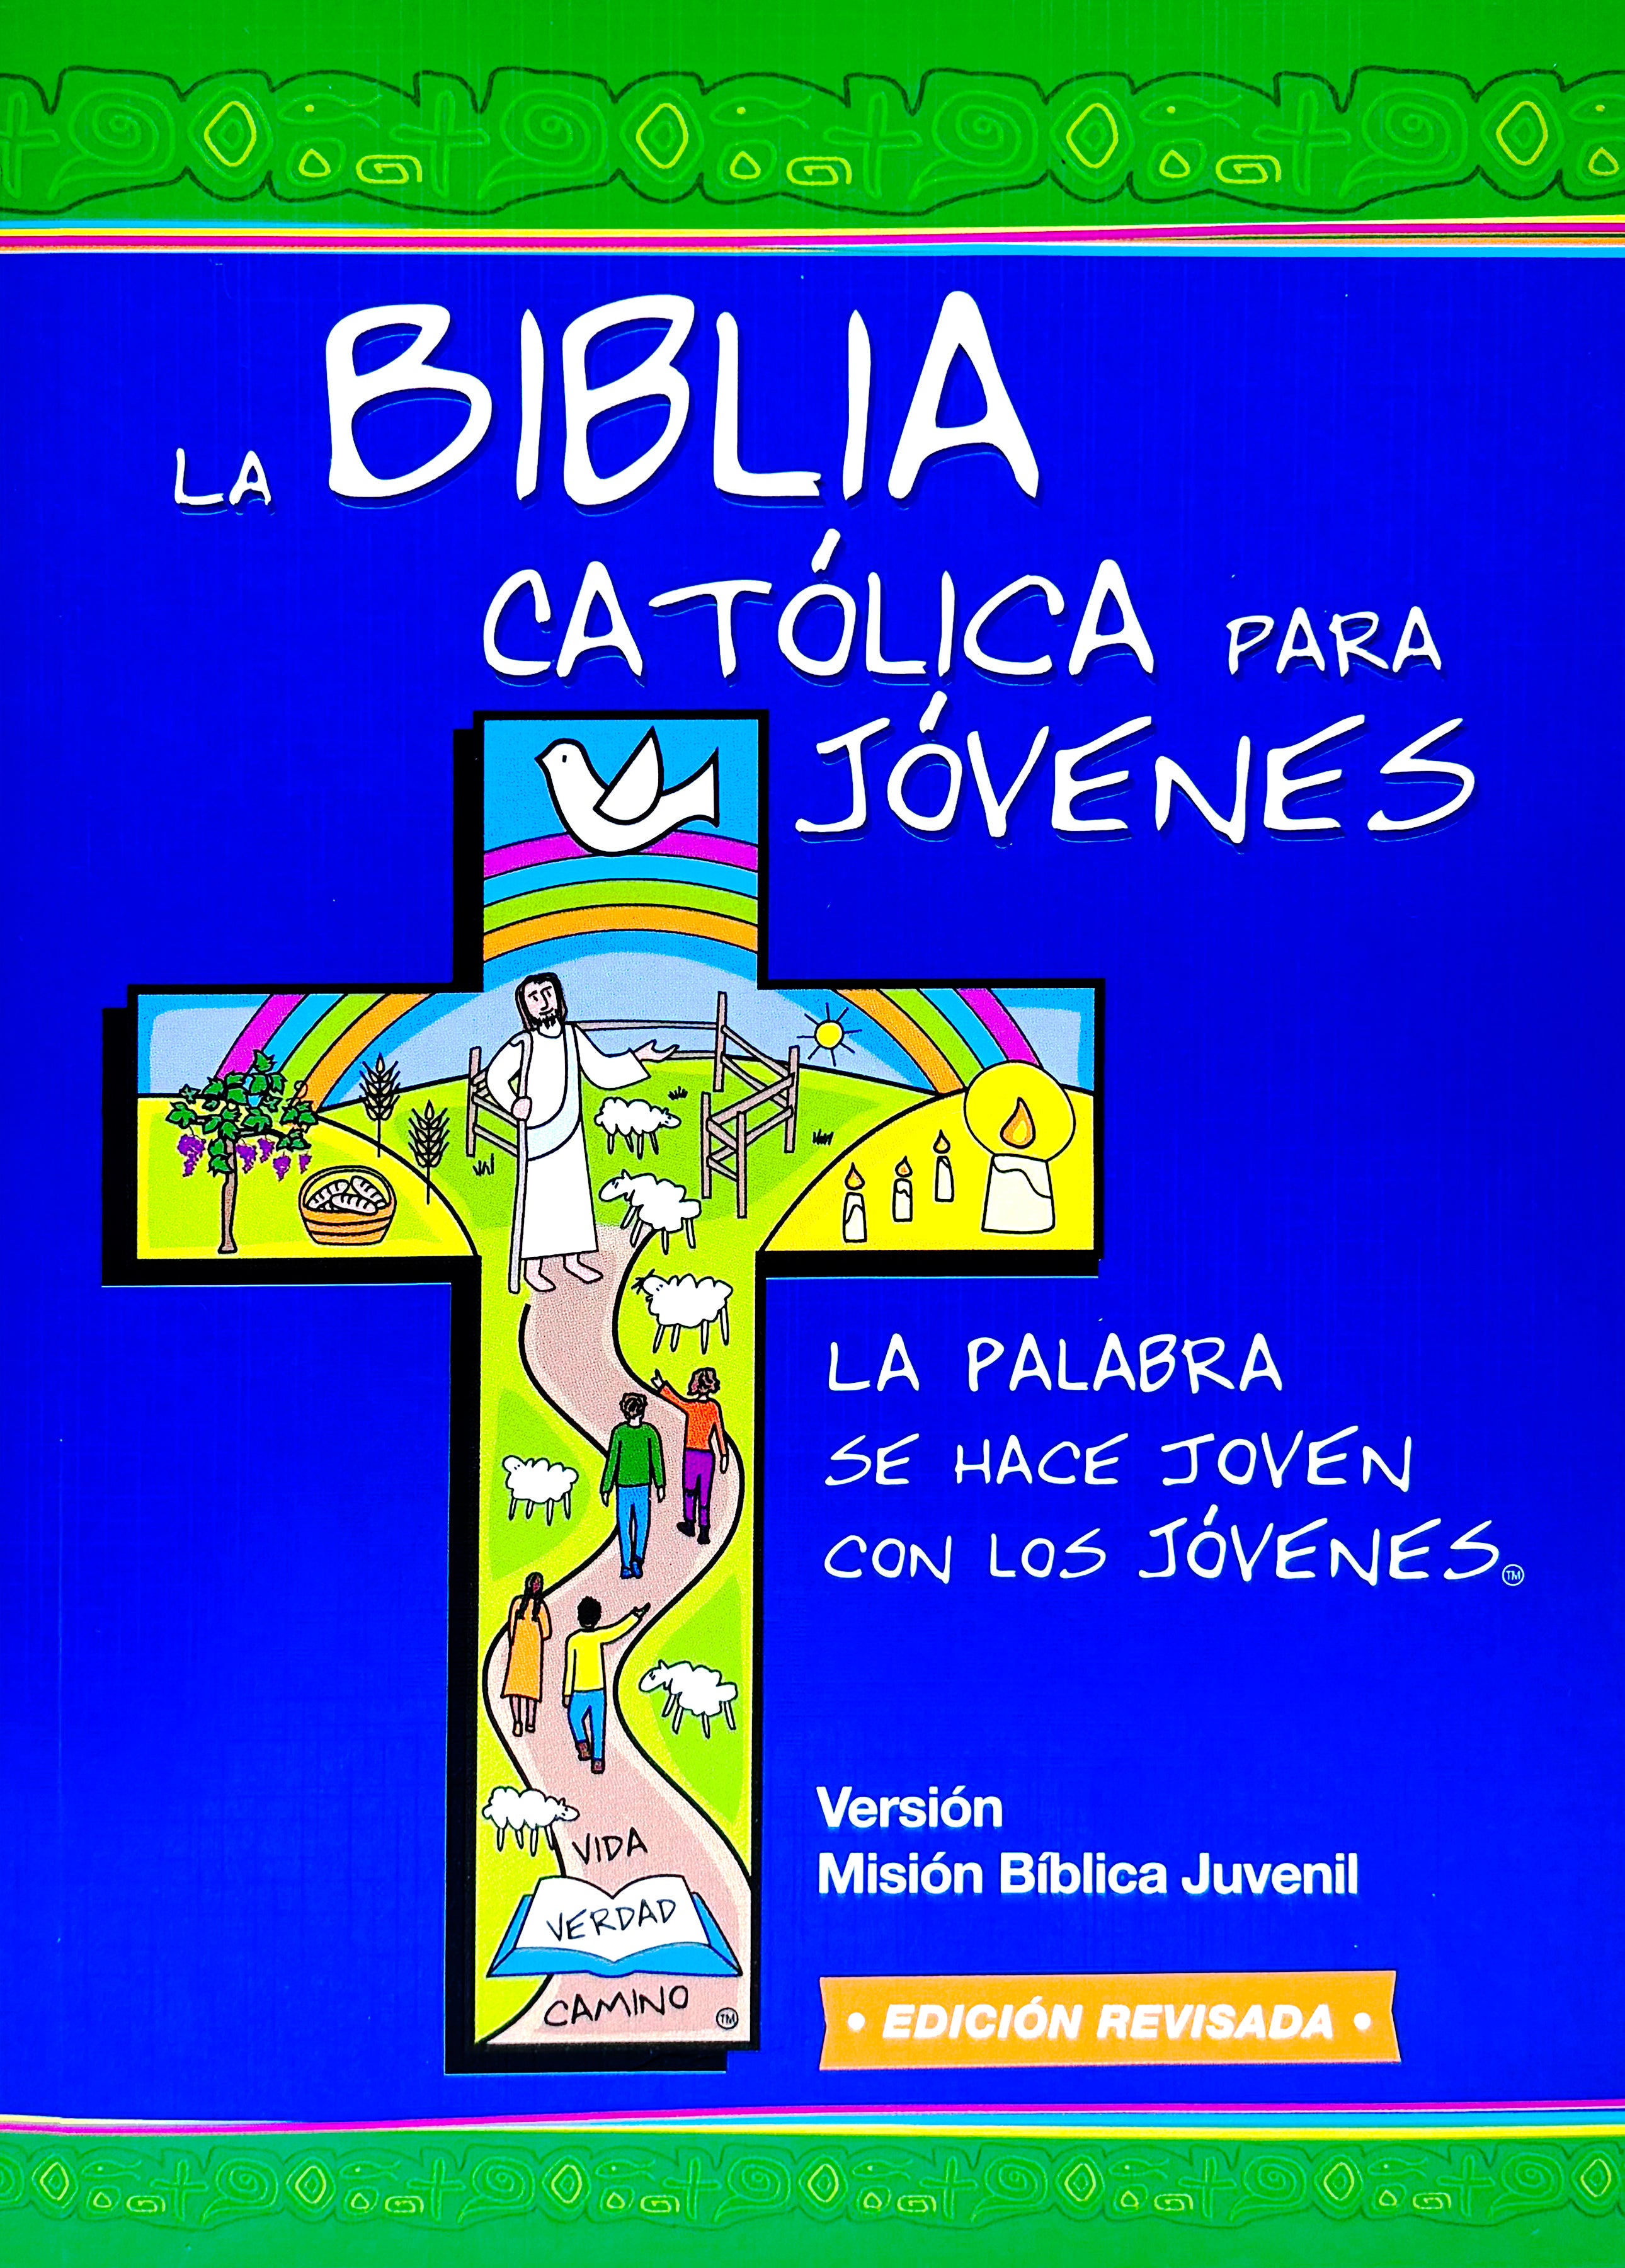 La Biblia Católica para Jóvenes. Una tinta